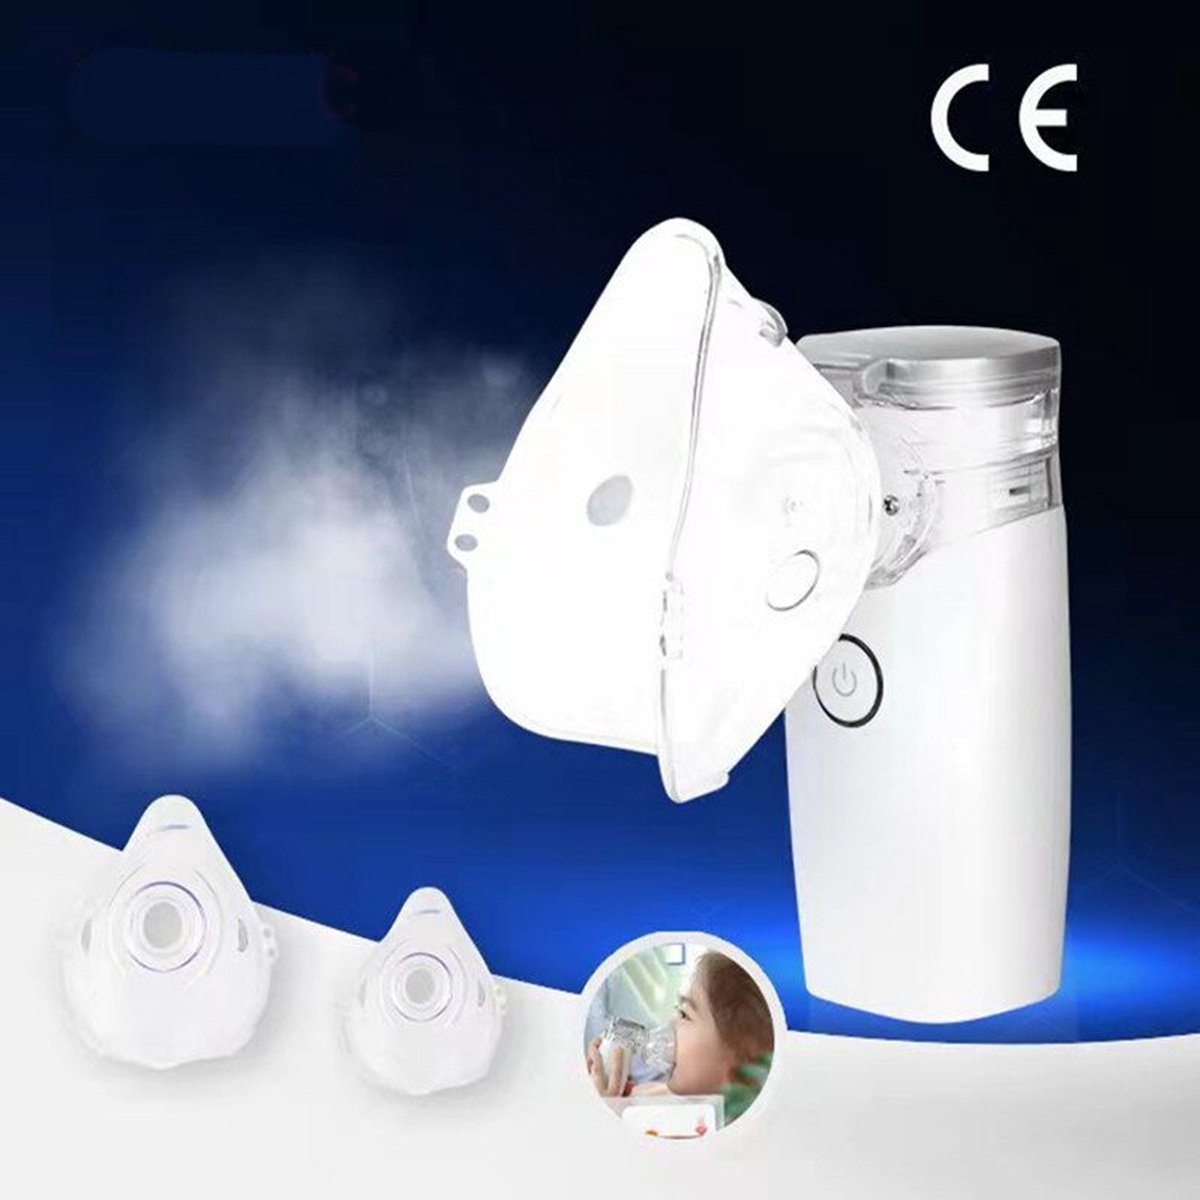 Inhalator – Vernevelaar – Aerosol – Inhalator voor kinderen en volwassenen – Inhalatieapparaat – Aerosoltoestel – Vernevelaar inhalator – Vernevelaar astma – Ultrasone Vernevelaar – Inhaler – Nem01 – Wit